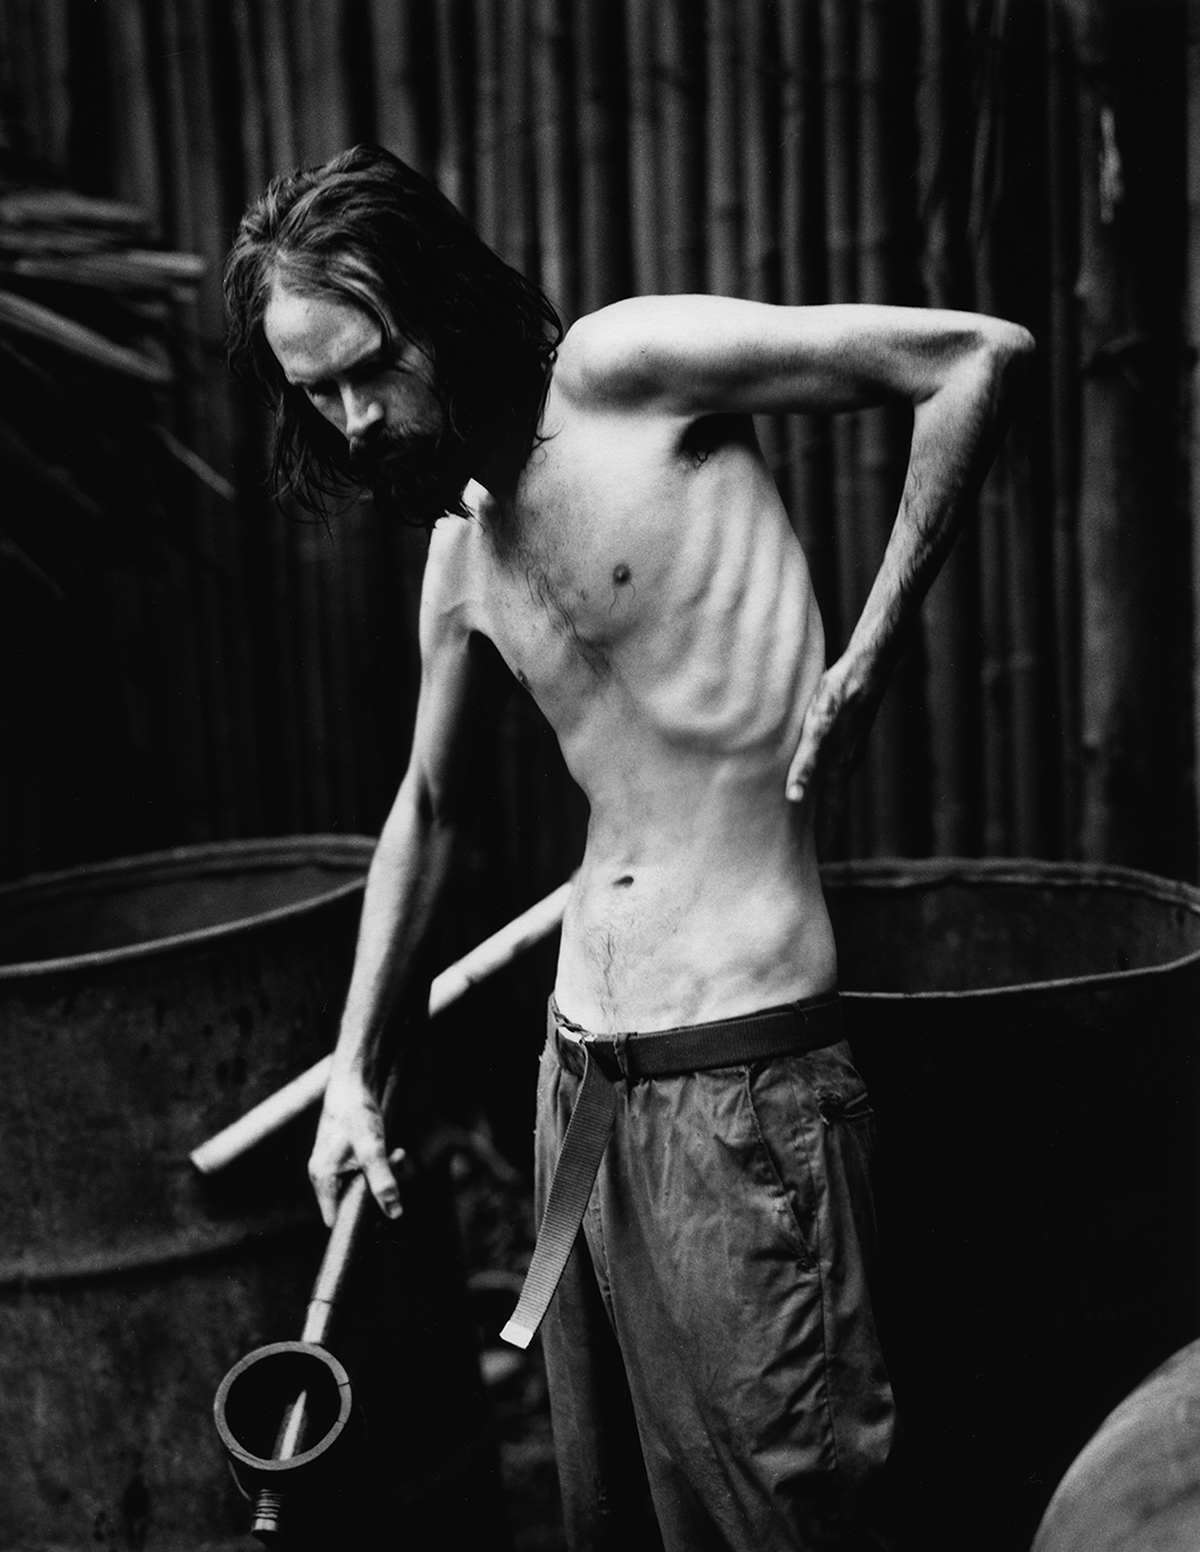 Schwarz-weiß-Foto: Ein extrem dünner, ausgemergelter junger Mann mit freiem Oberkörper. Seine Rippen sind deutlich zu sehen.